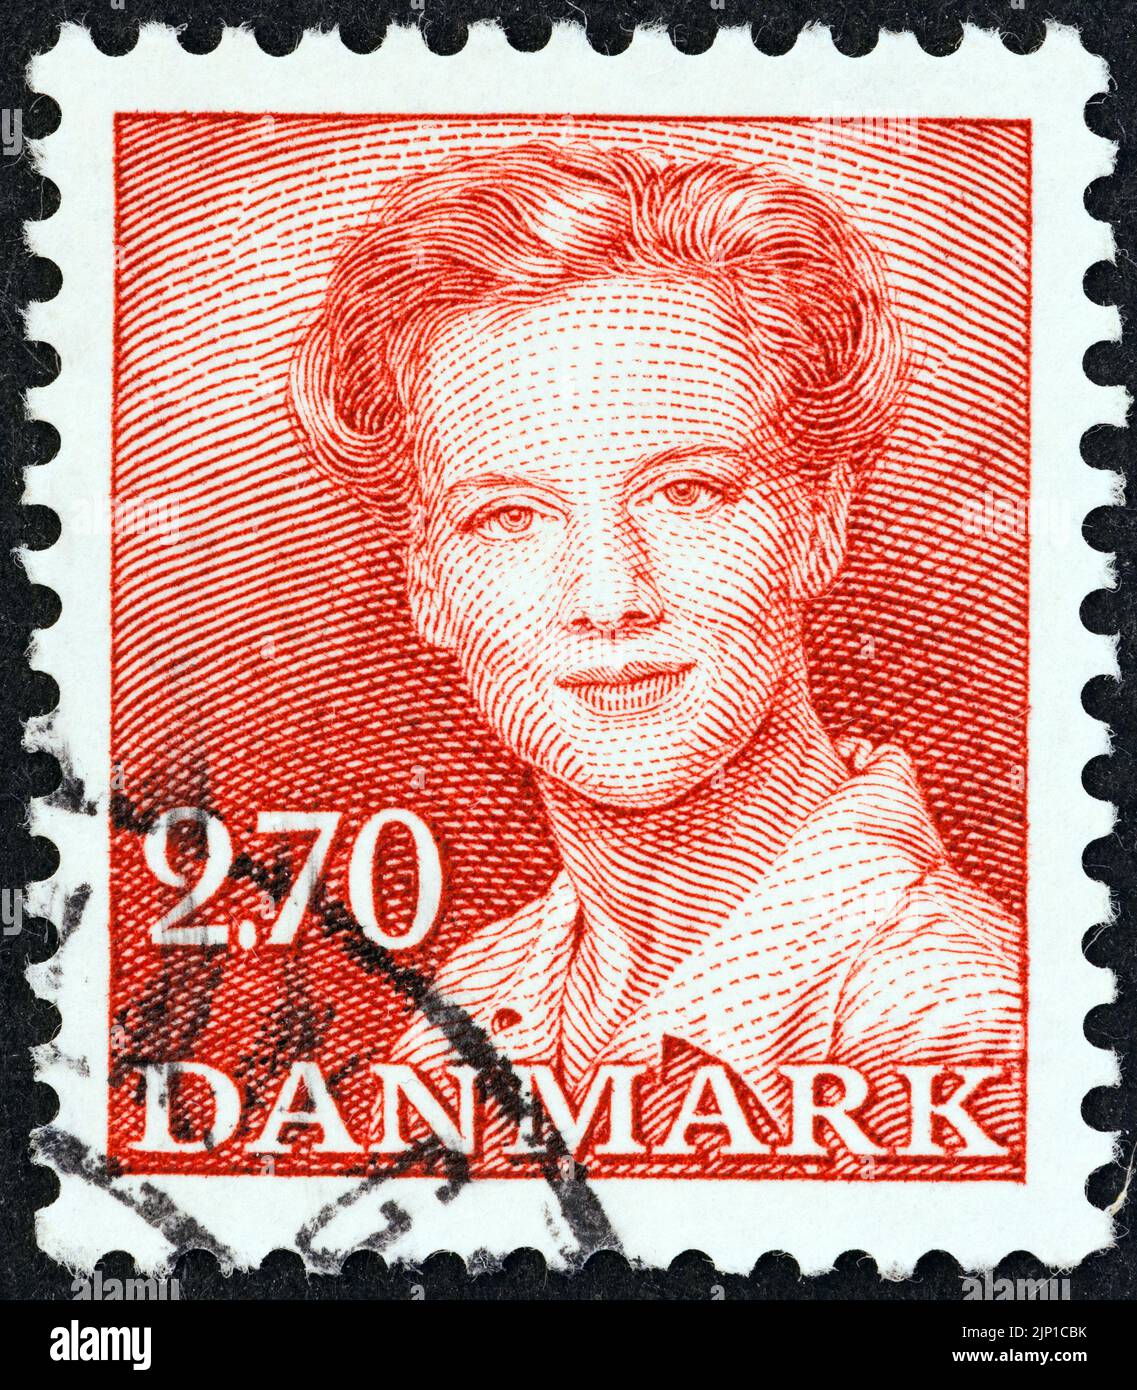 DANEMARK - VERS 1982: Un timbre imprimé au Danemark montre la Reine Margrethe II, vers 1982. Banque D'Images